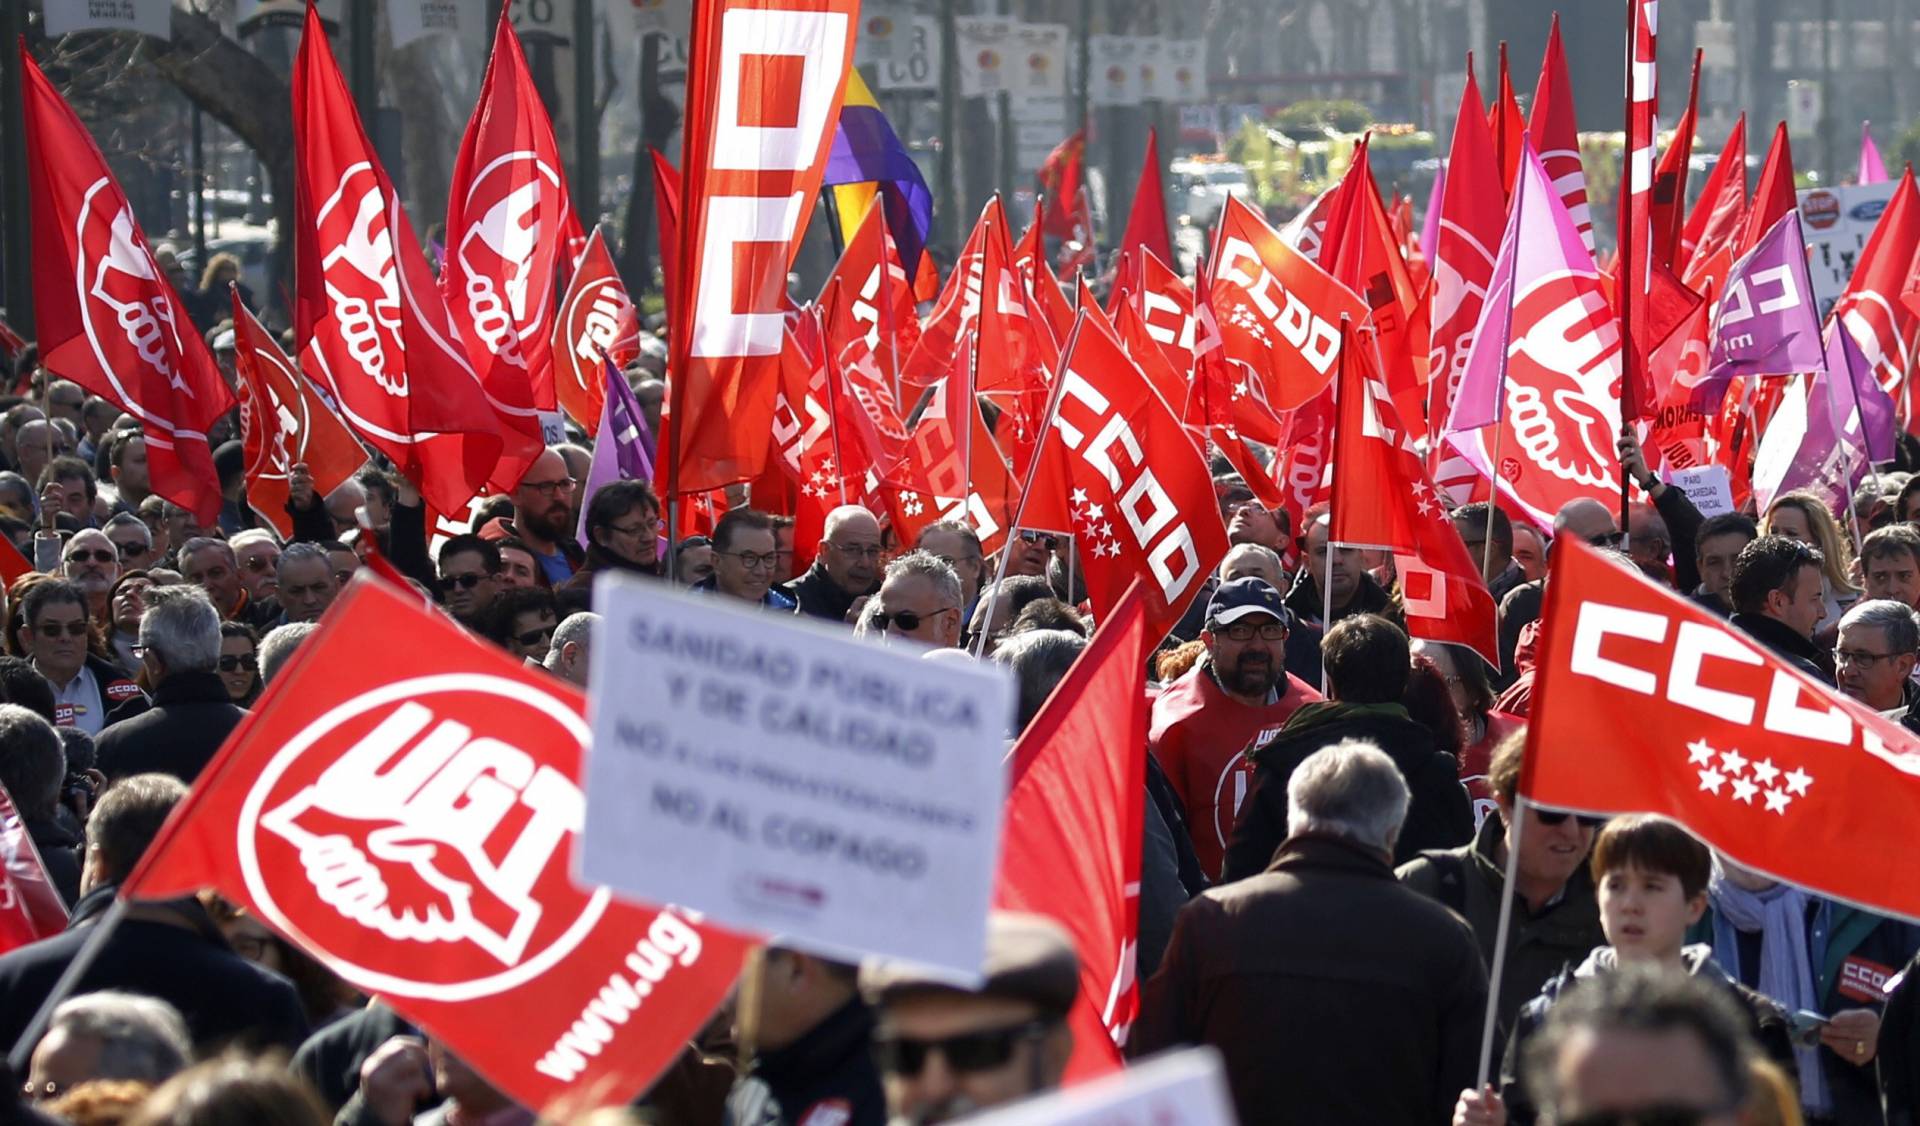 Manifestación convocada por CCOO y UGT en Madrid para presionar al Gobierno y patronal por la pérdida de poder adquisitivo de trabajadores.